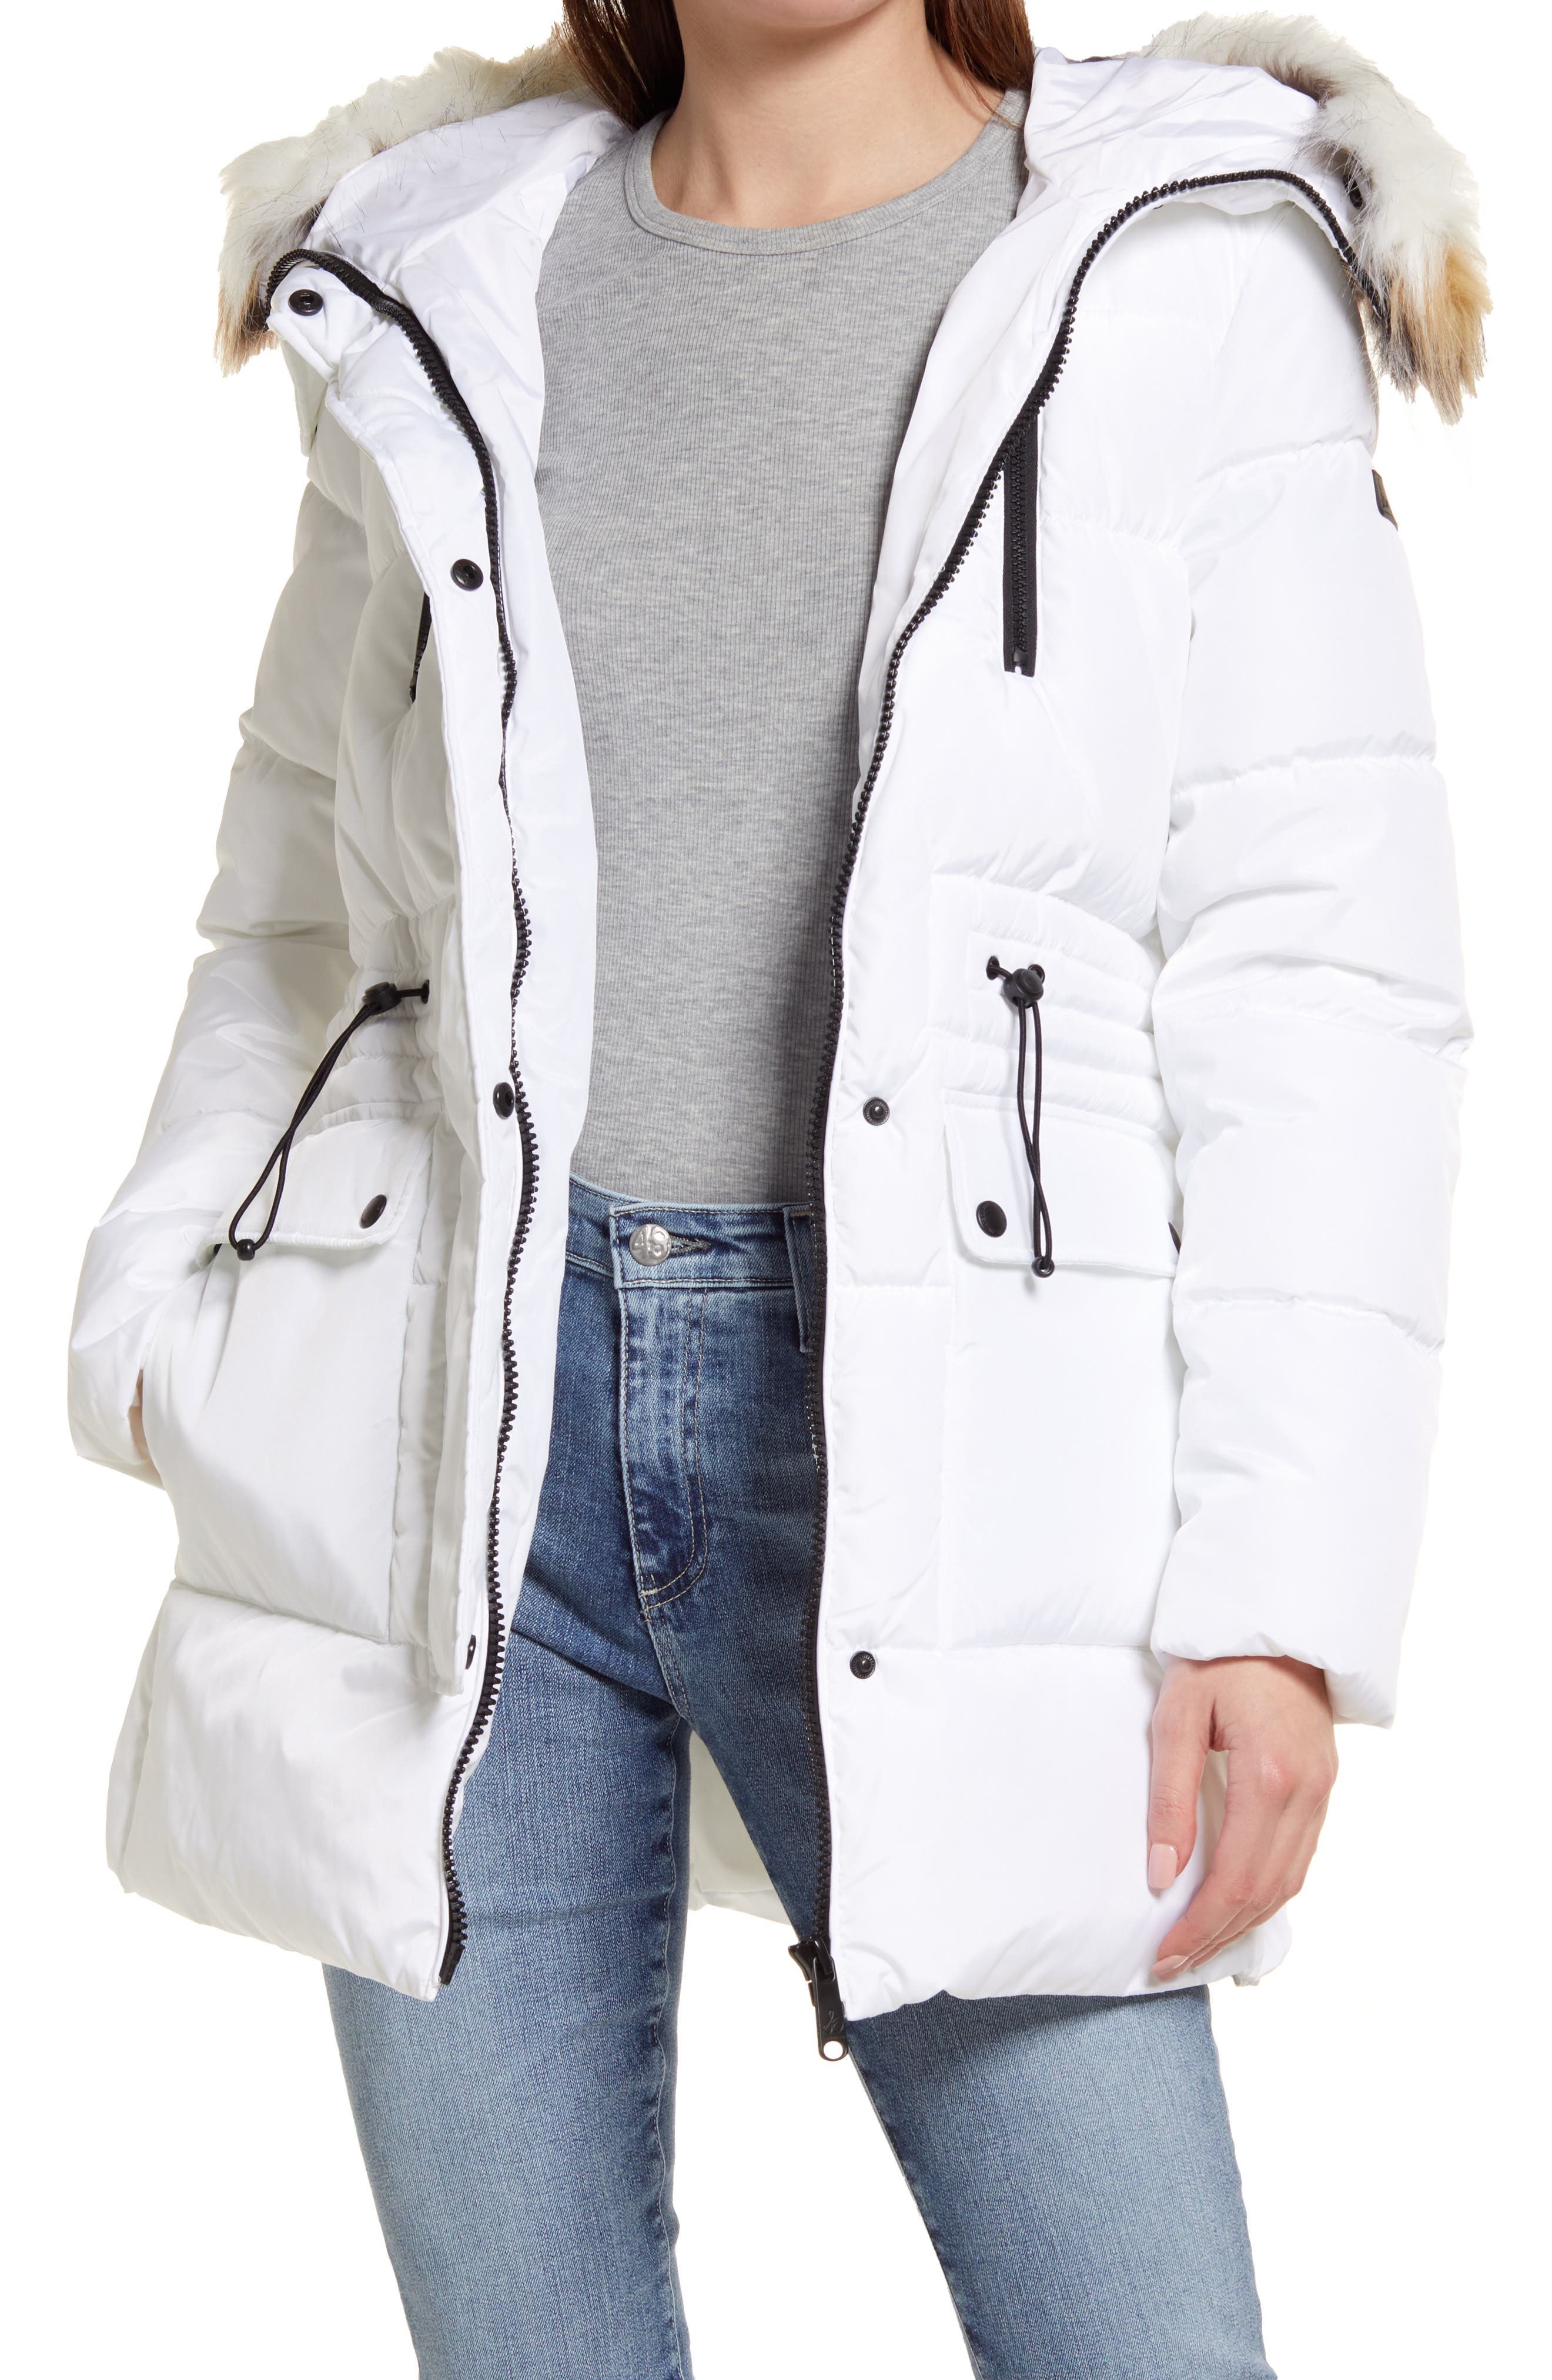 ASCOBO Coat for Women Fashion Winter Coats for Women Warm Hooded Outerwear Zipper Open Jacket Long Oversized Parkas Coats 